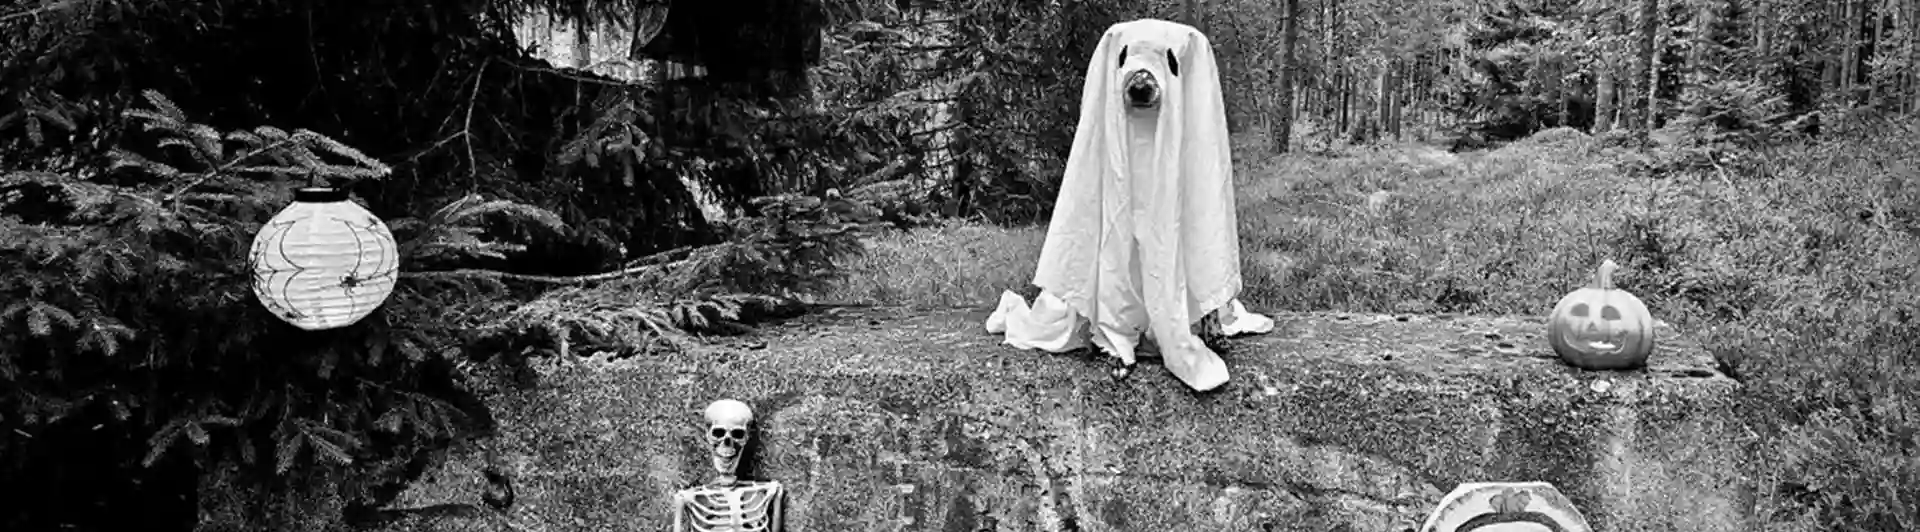 Hund utklädd till spöke med halloween dekoration